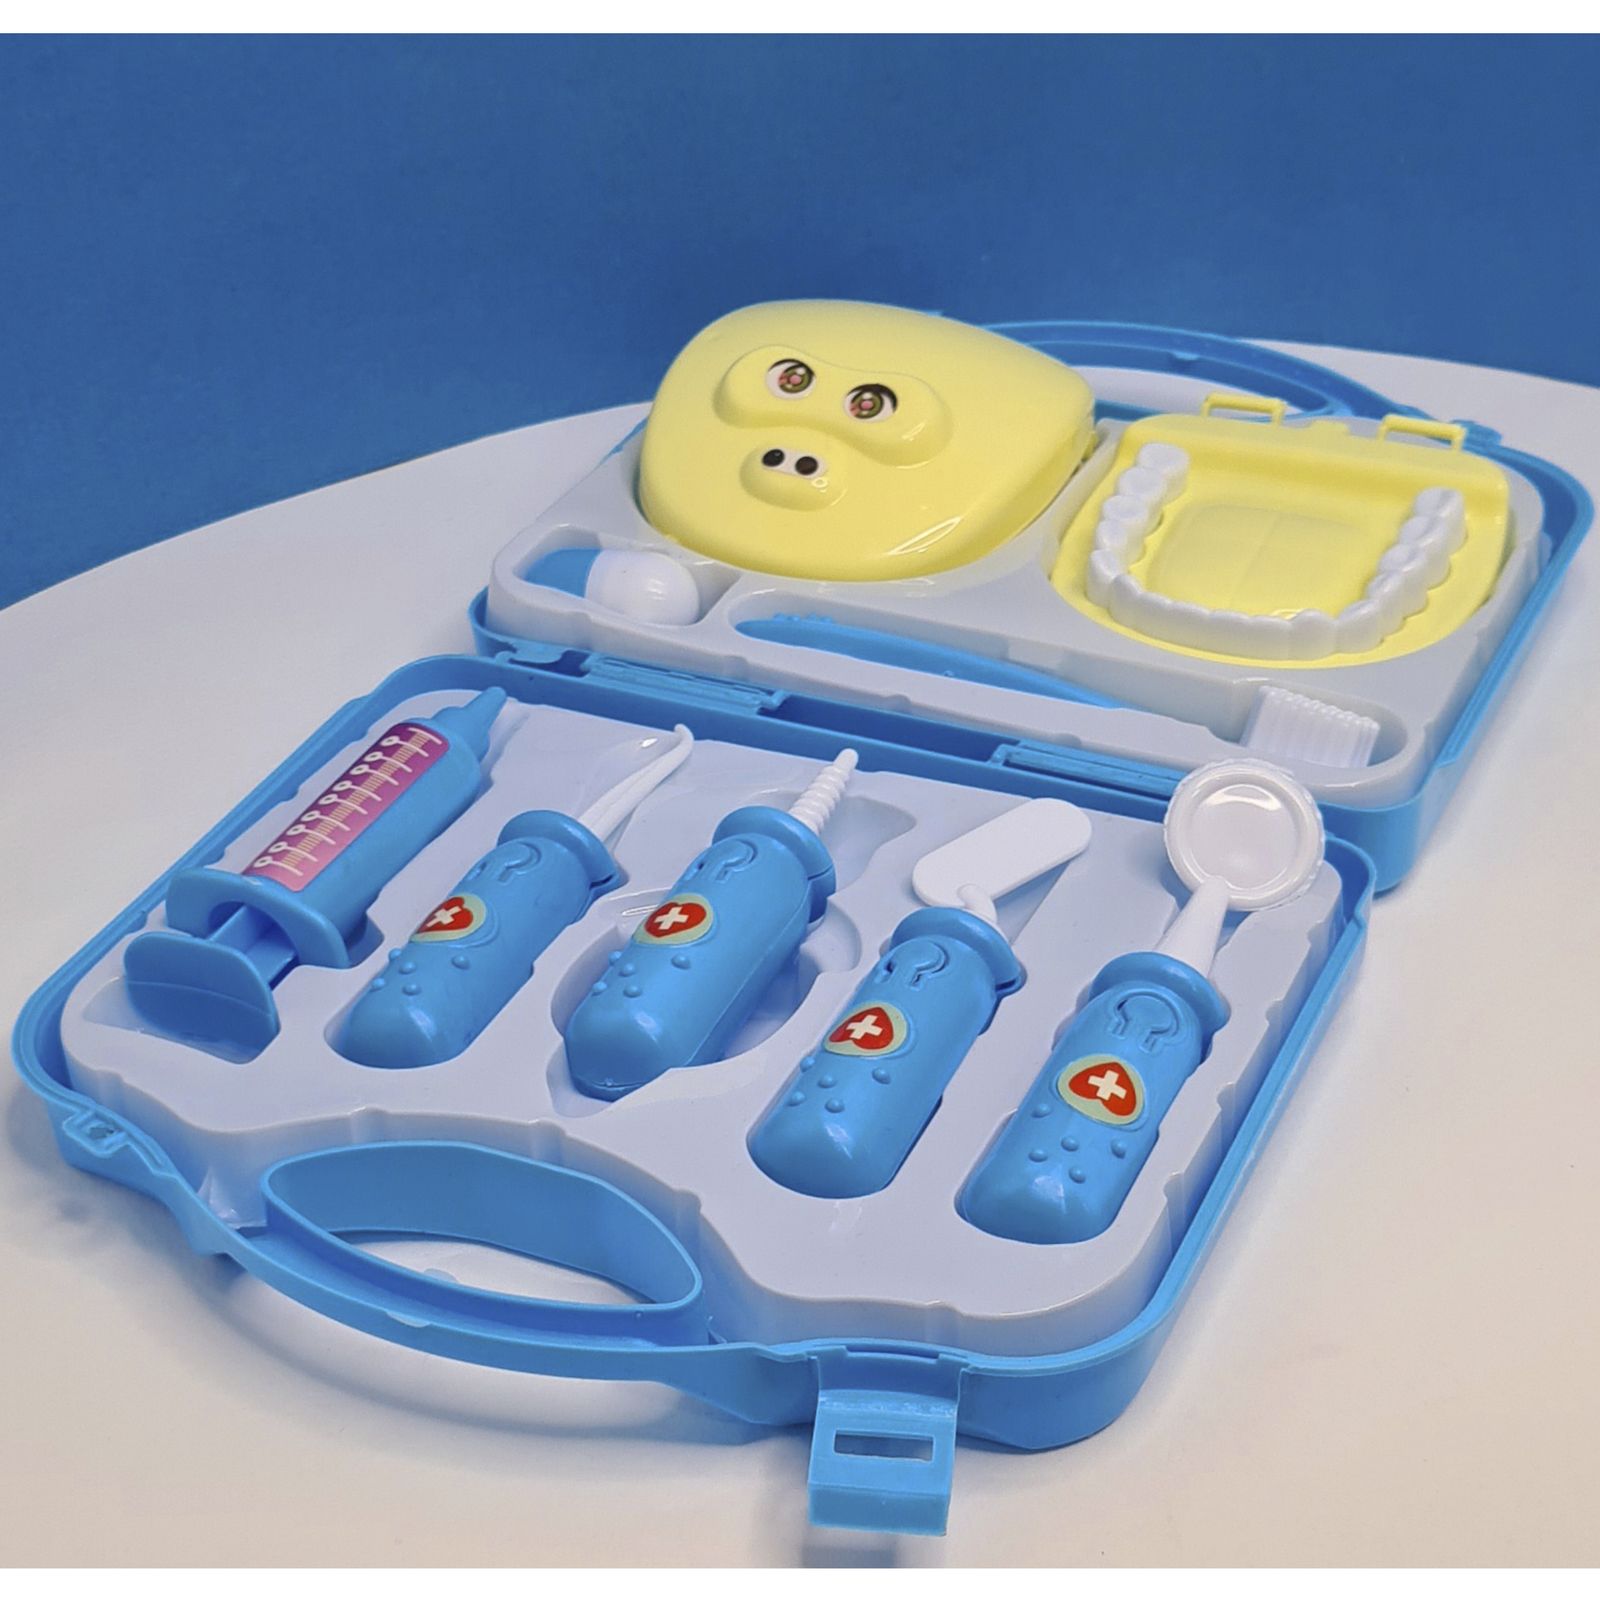 اسباب بازی مدل ست دندان پزشکی مجموعه 9 عددی -  - 5